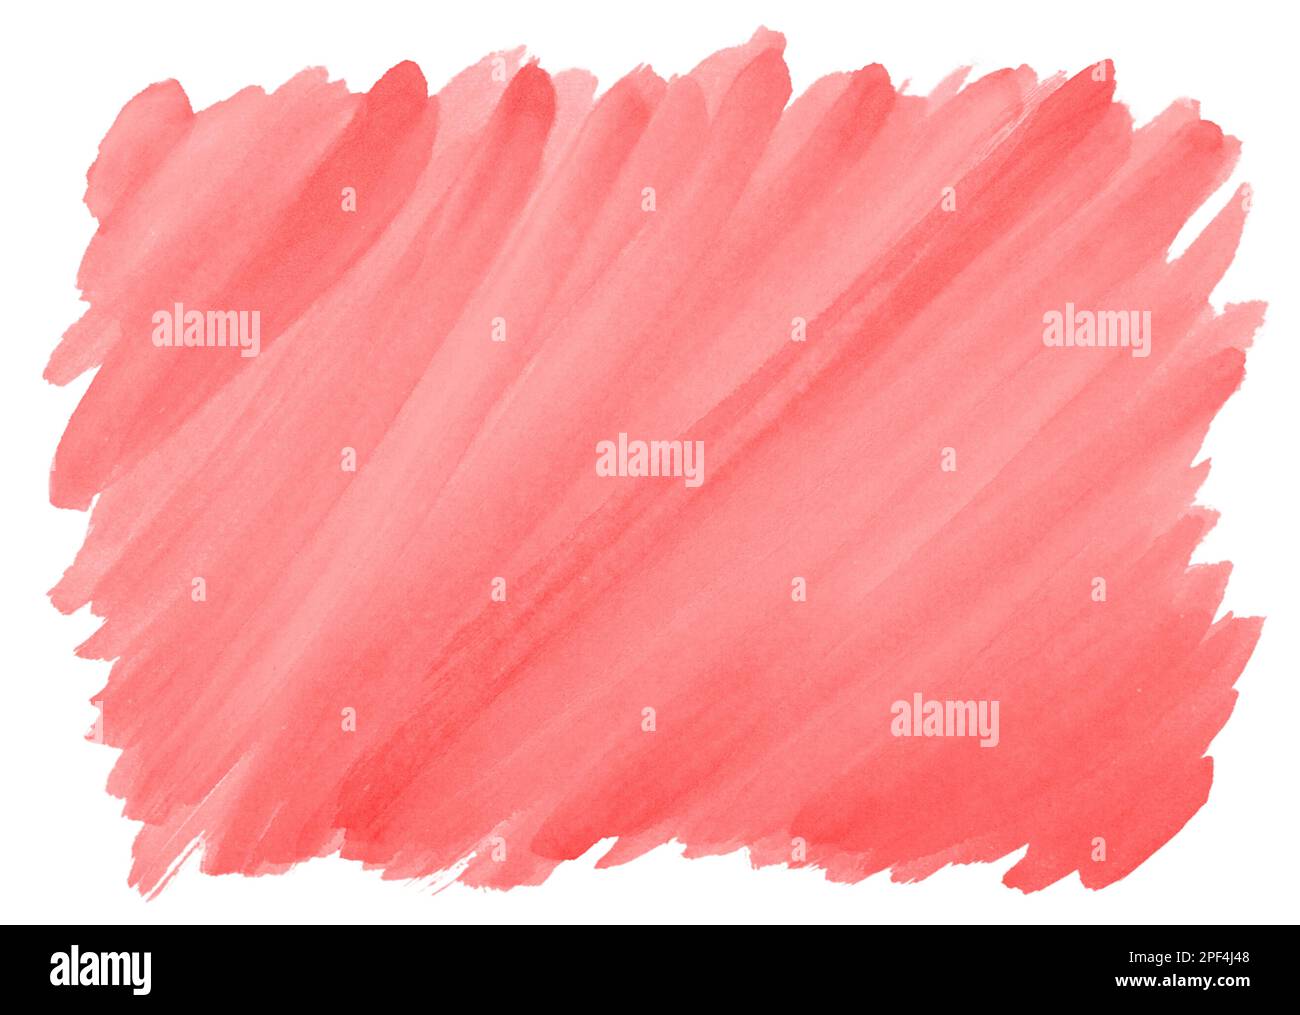 Rosso sfondo ad acquerello con visibile spazzolata texture e bordi irregolari Foto Stock